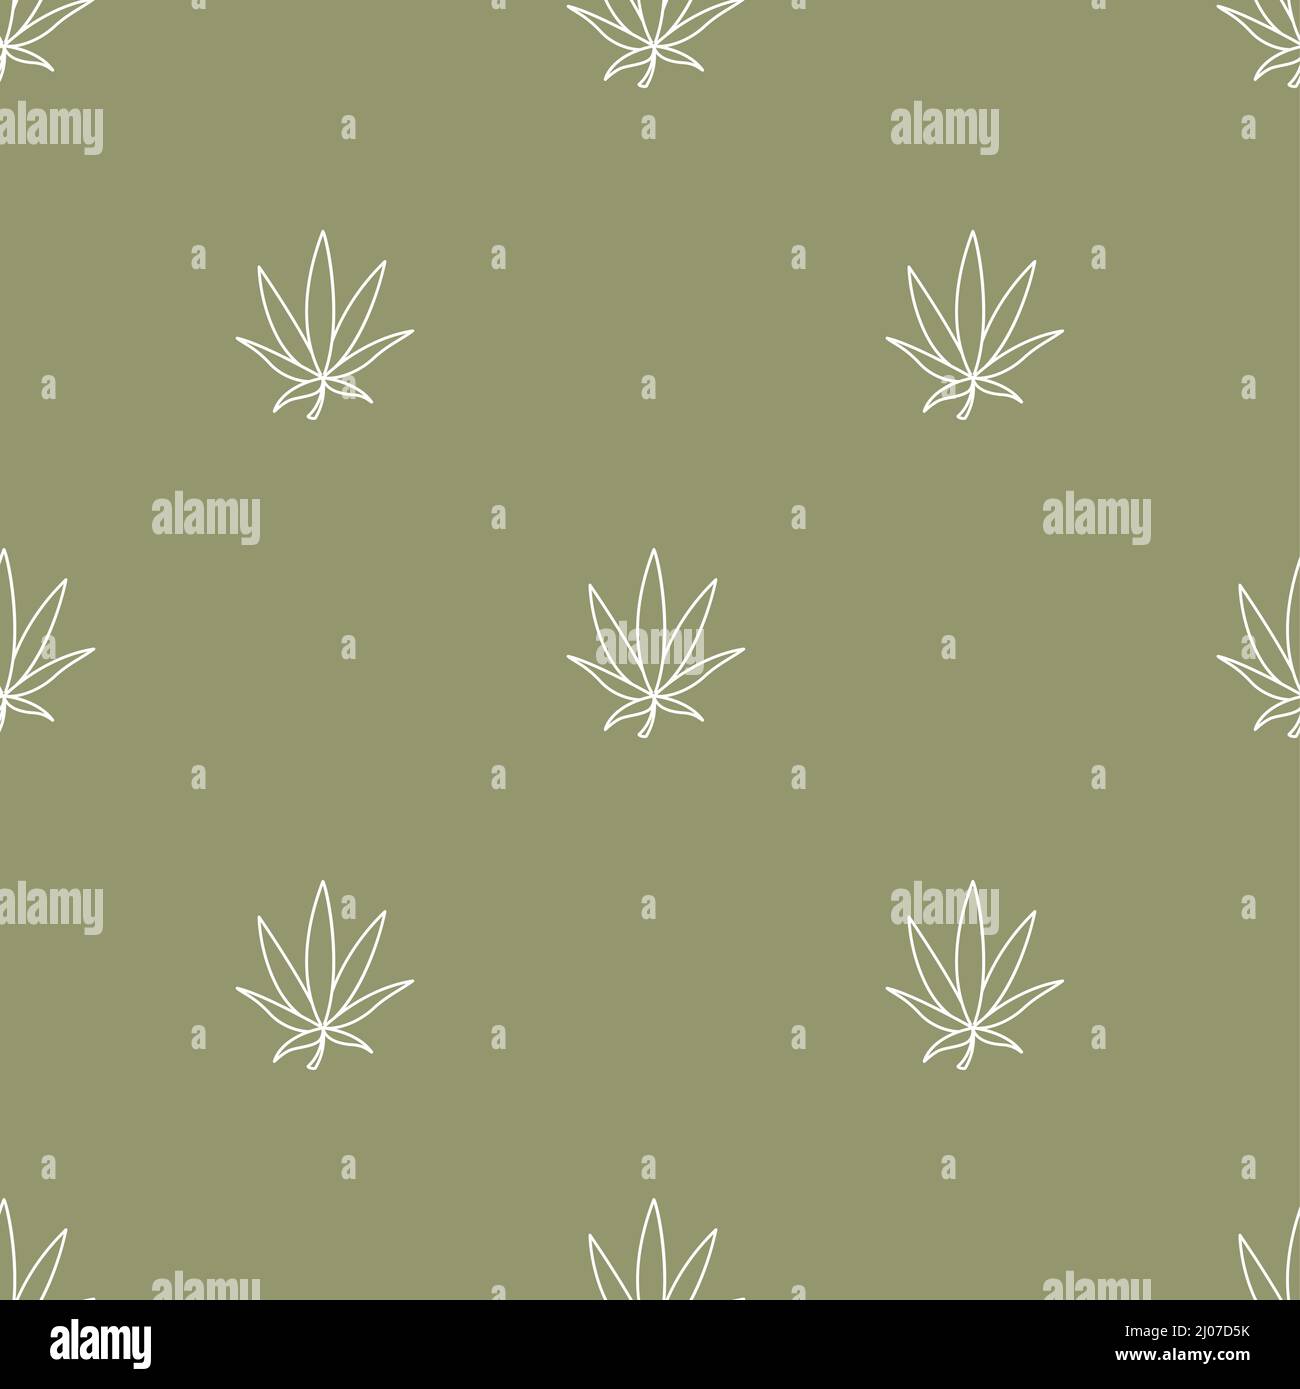 Nahtloses Muster mit Marihuana-Blättern, flache Vektorgrafik. Für T-Shirt-Drucke und andere Verwendungen. Stock Vektor